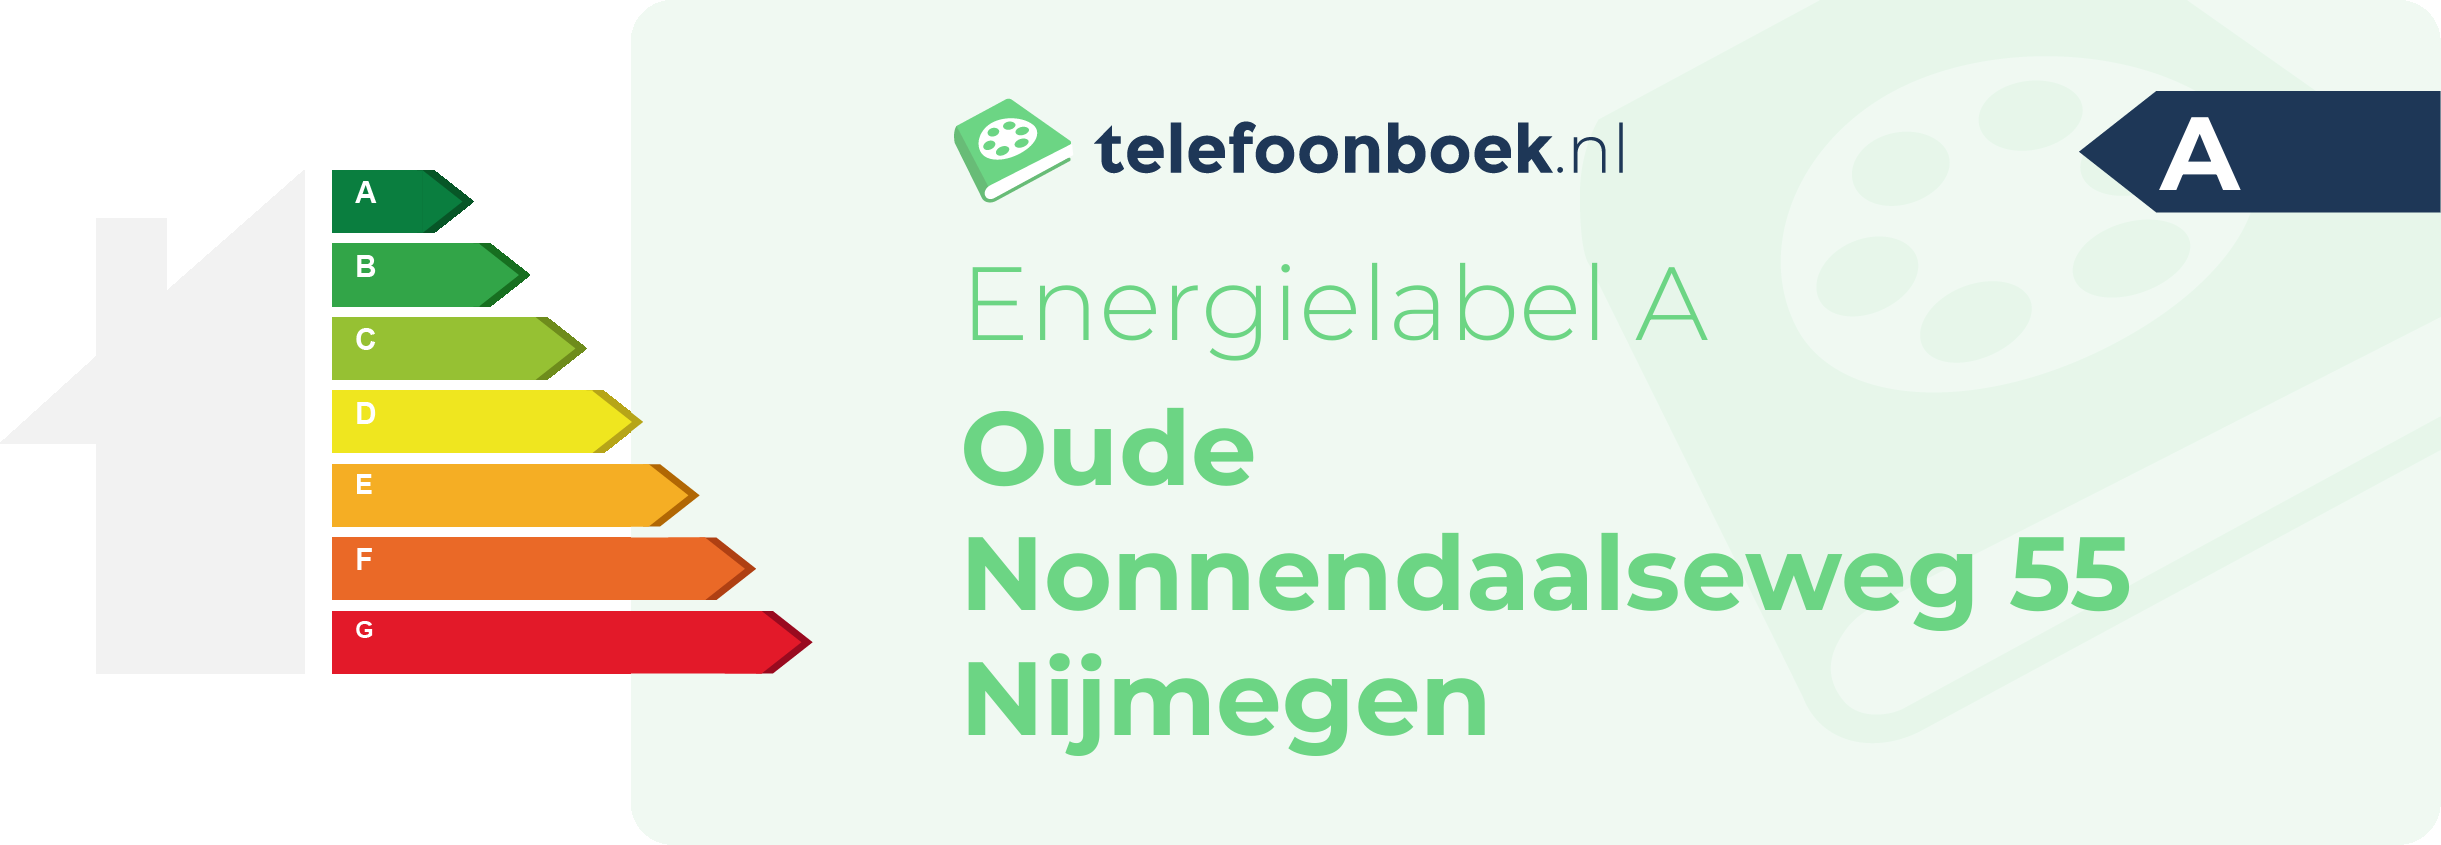 Energielabel Oude Nonnendaalseweg 55 Nijmegen